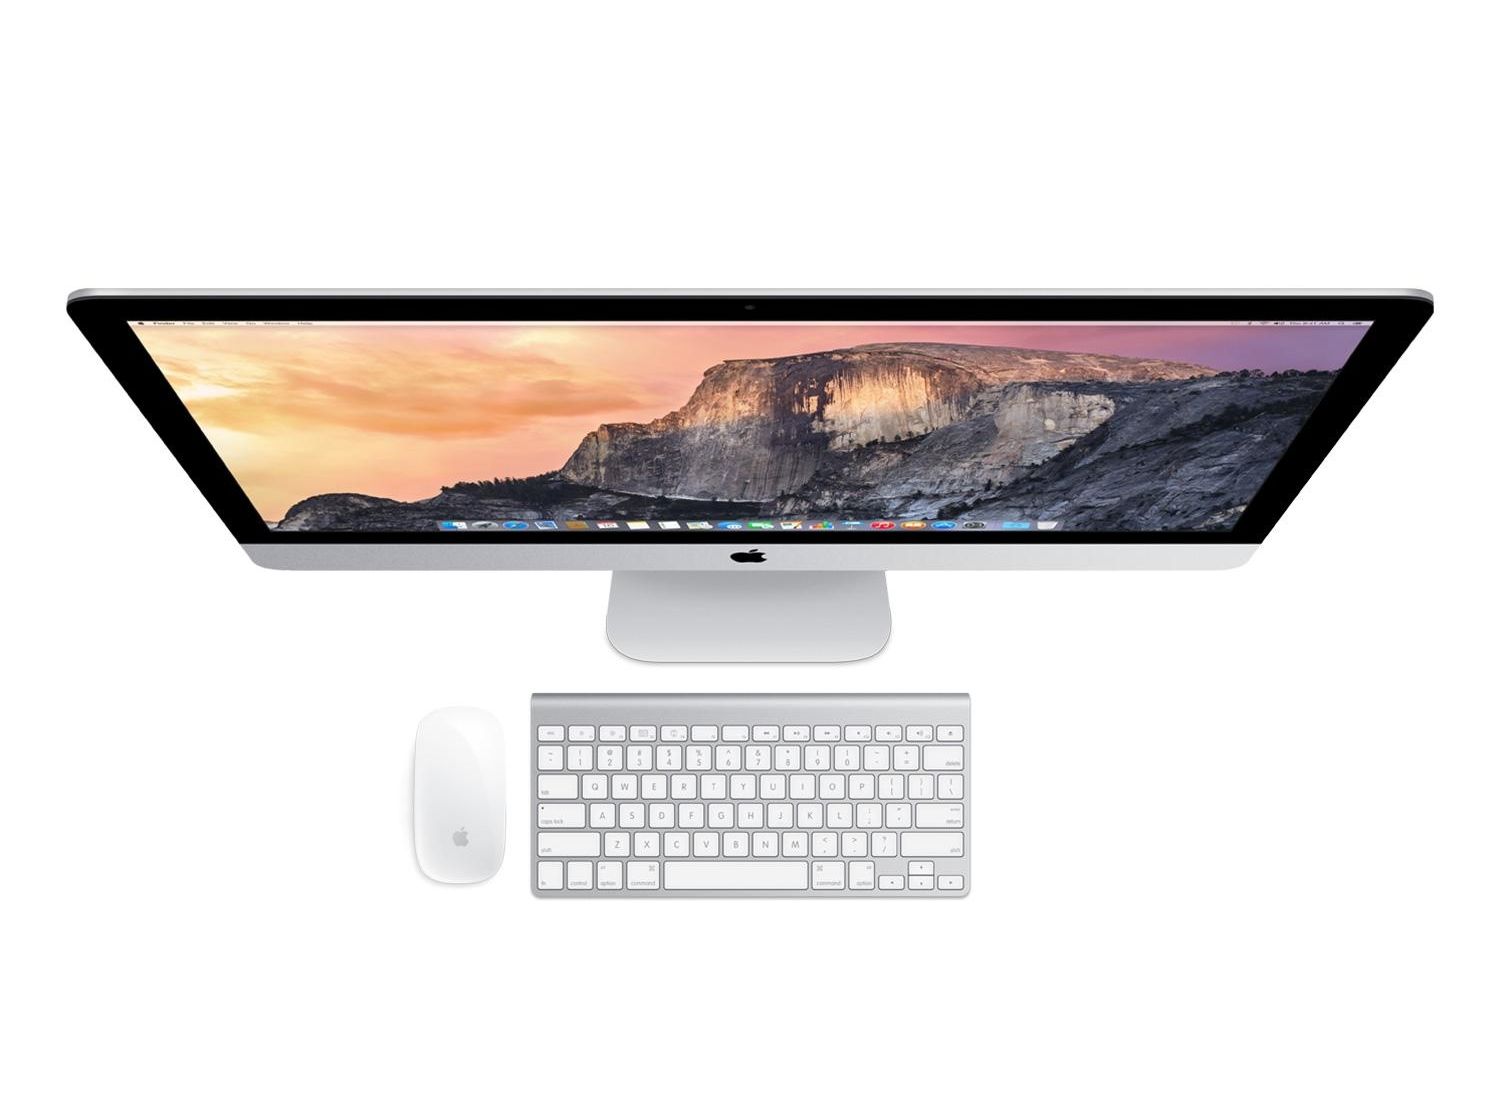 apple iMac-5K-27inch-Late 2015-MK482 i5-3.3GHz